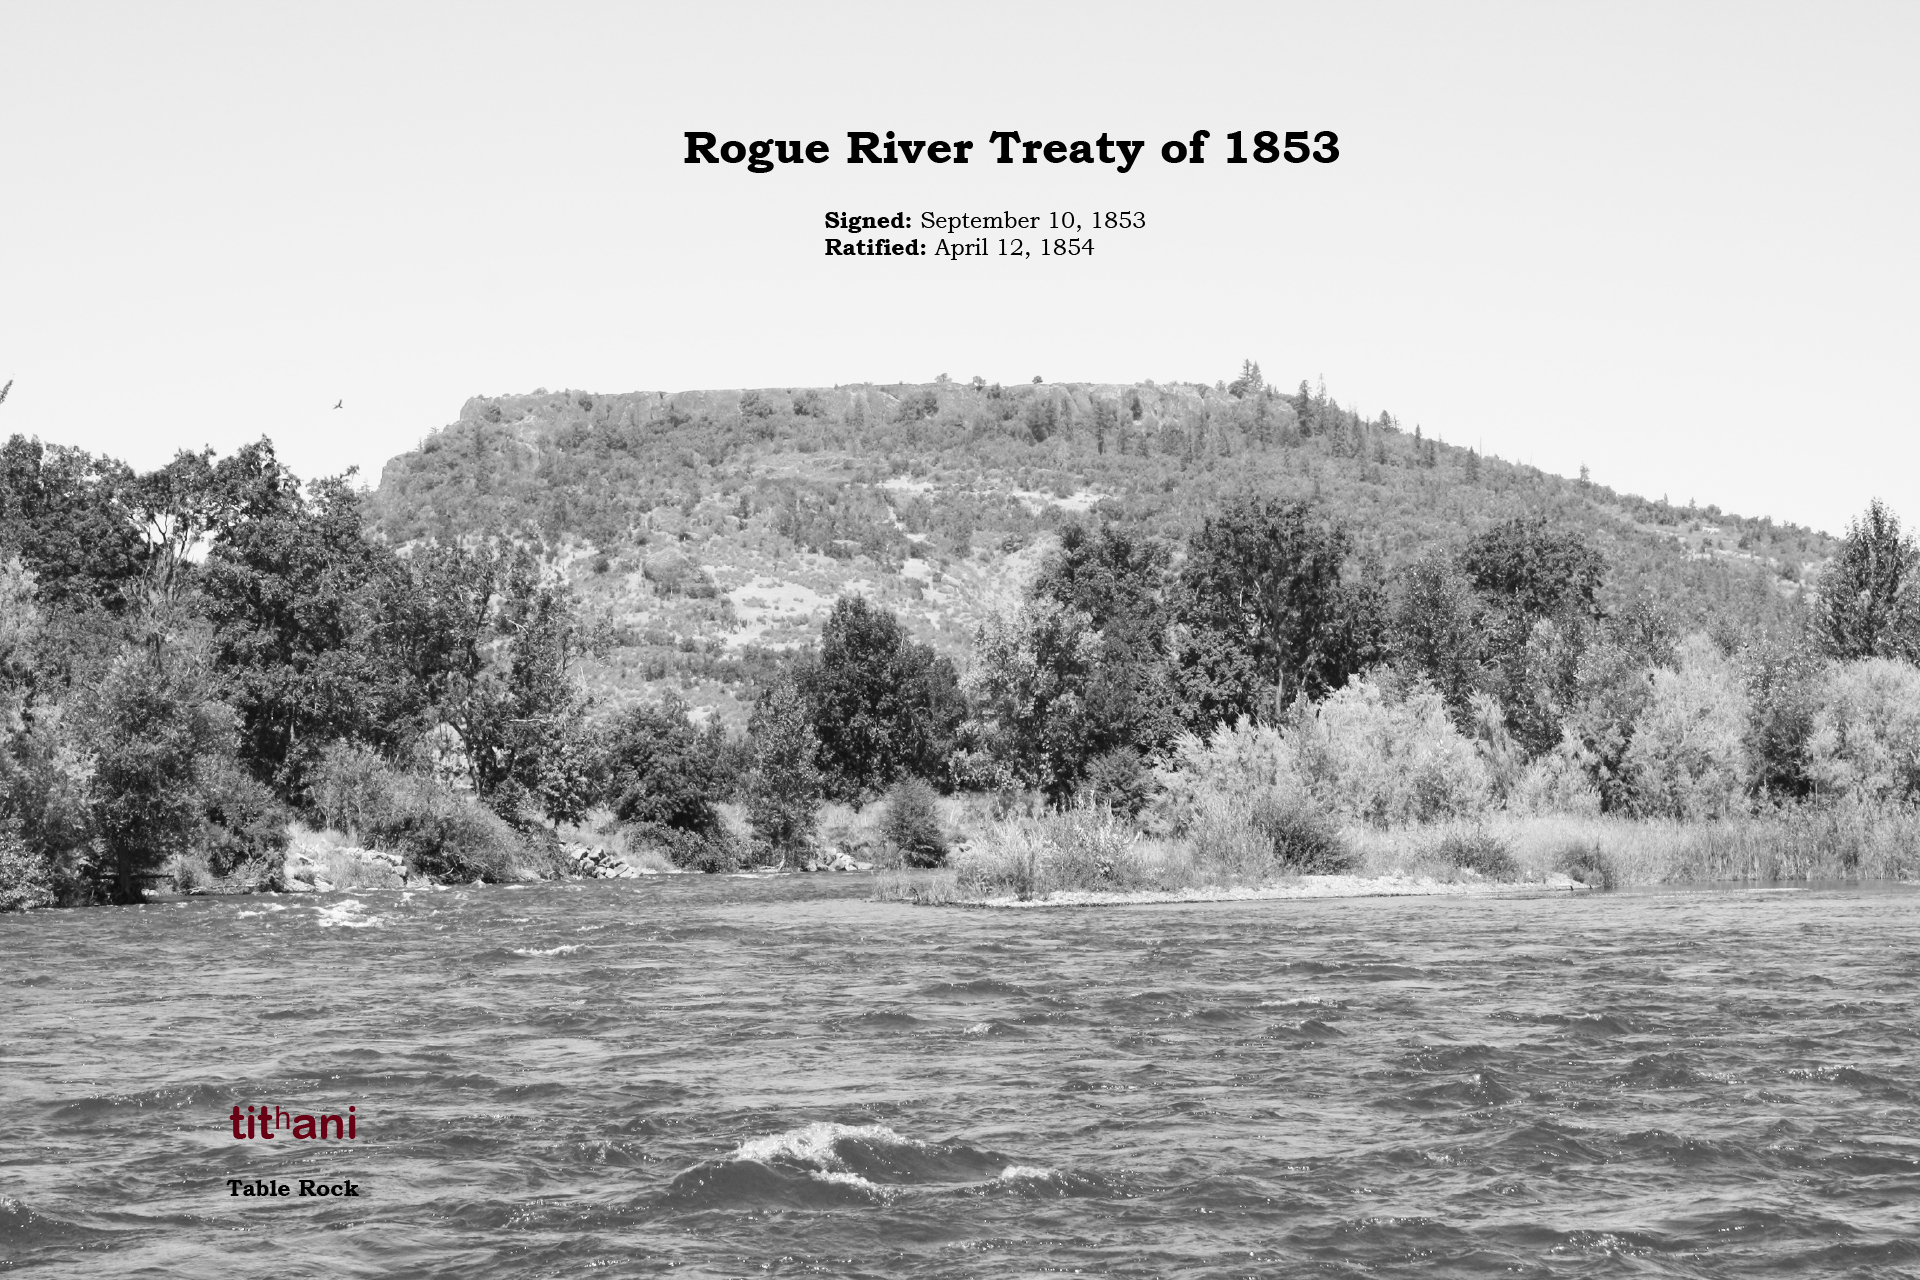 Rogue River Treaty 1853